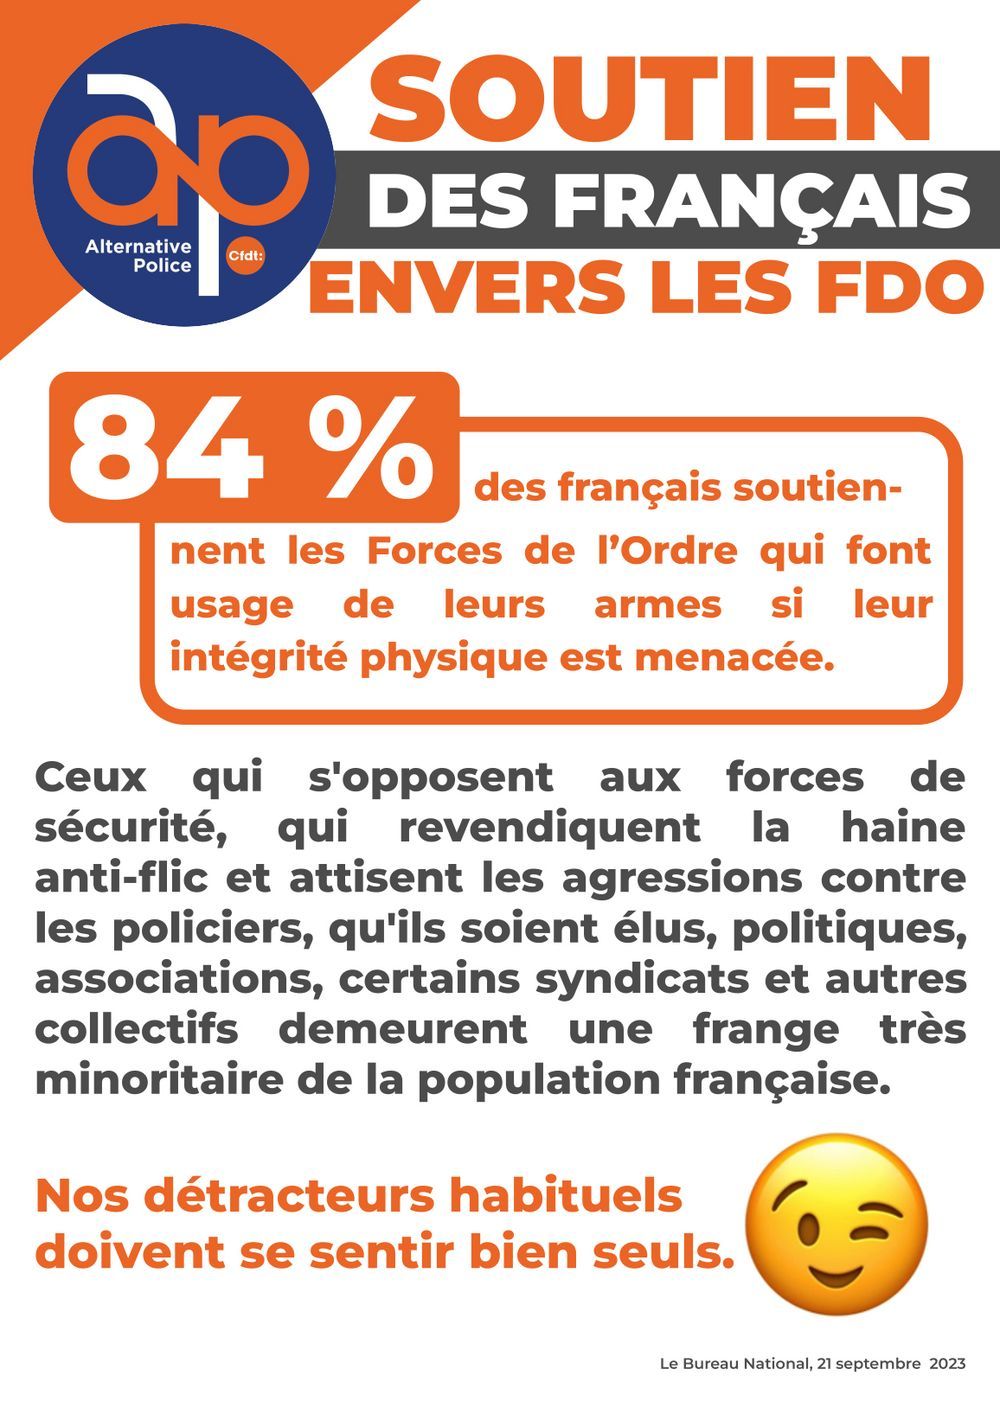 84 % des français soutiennent les FDO